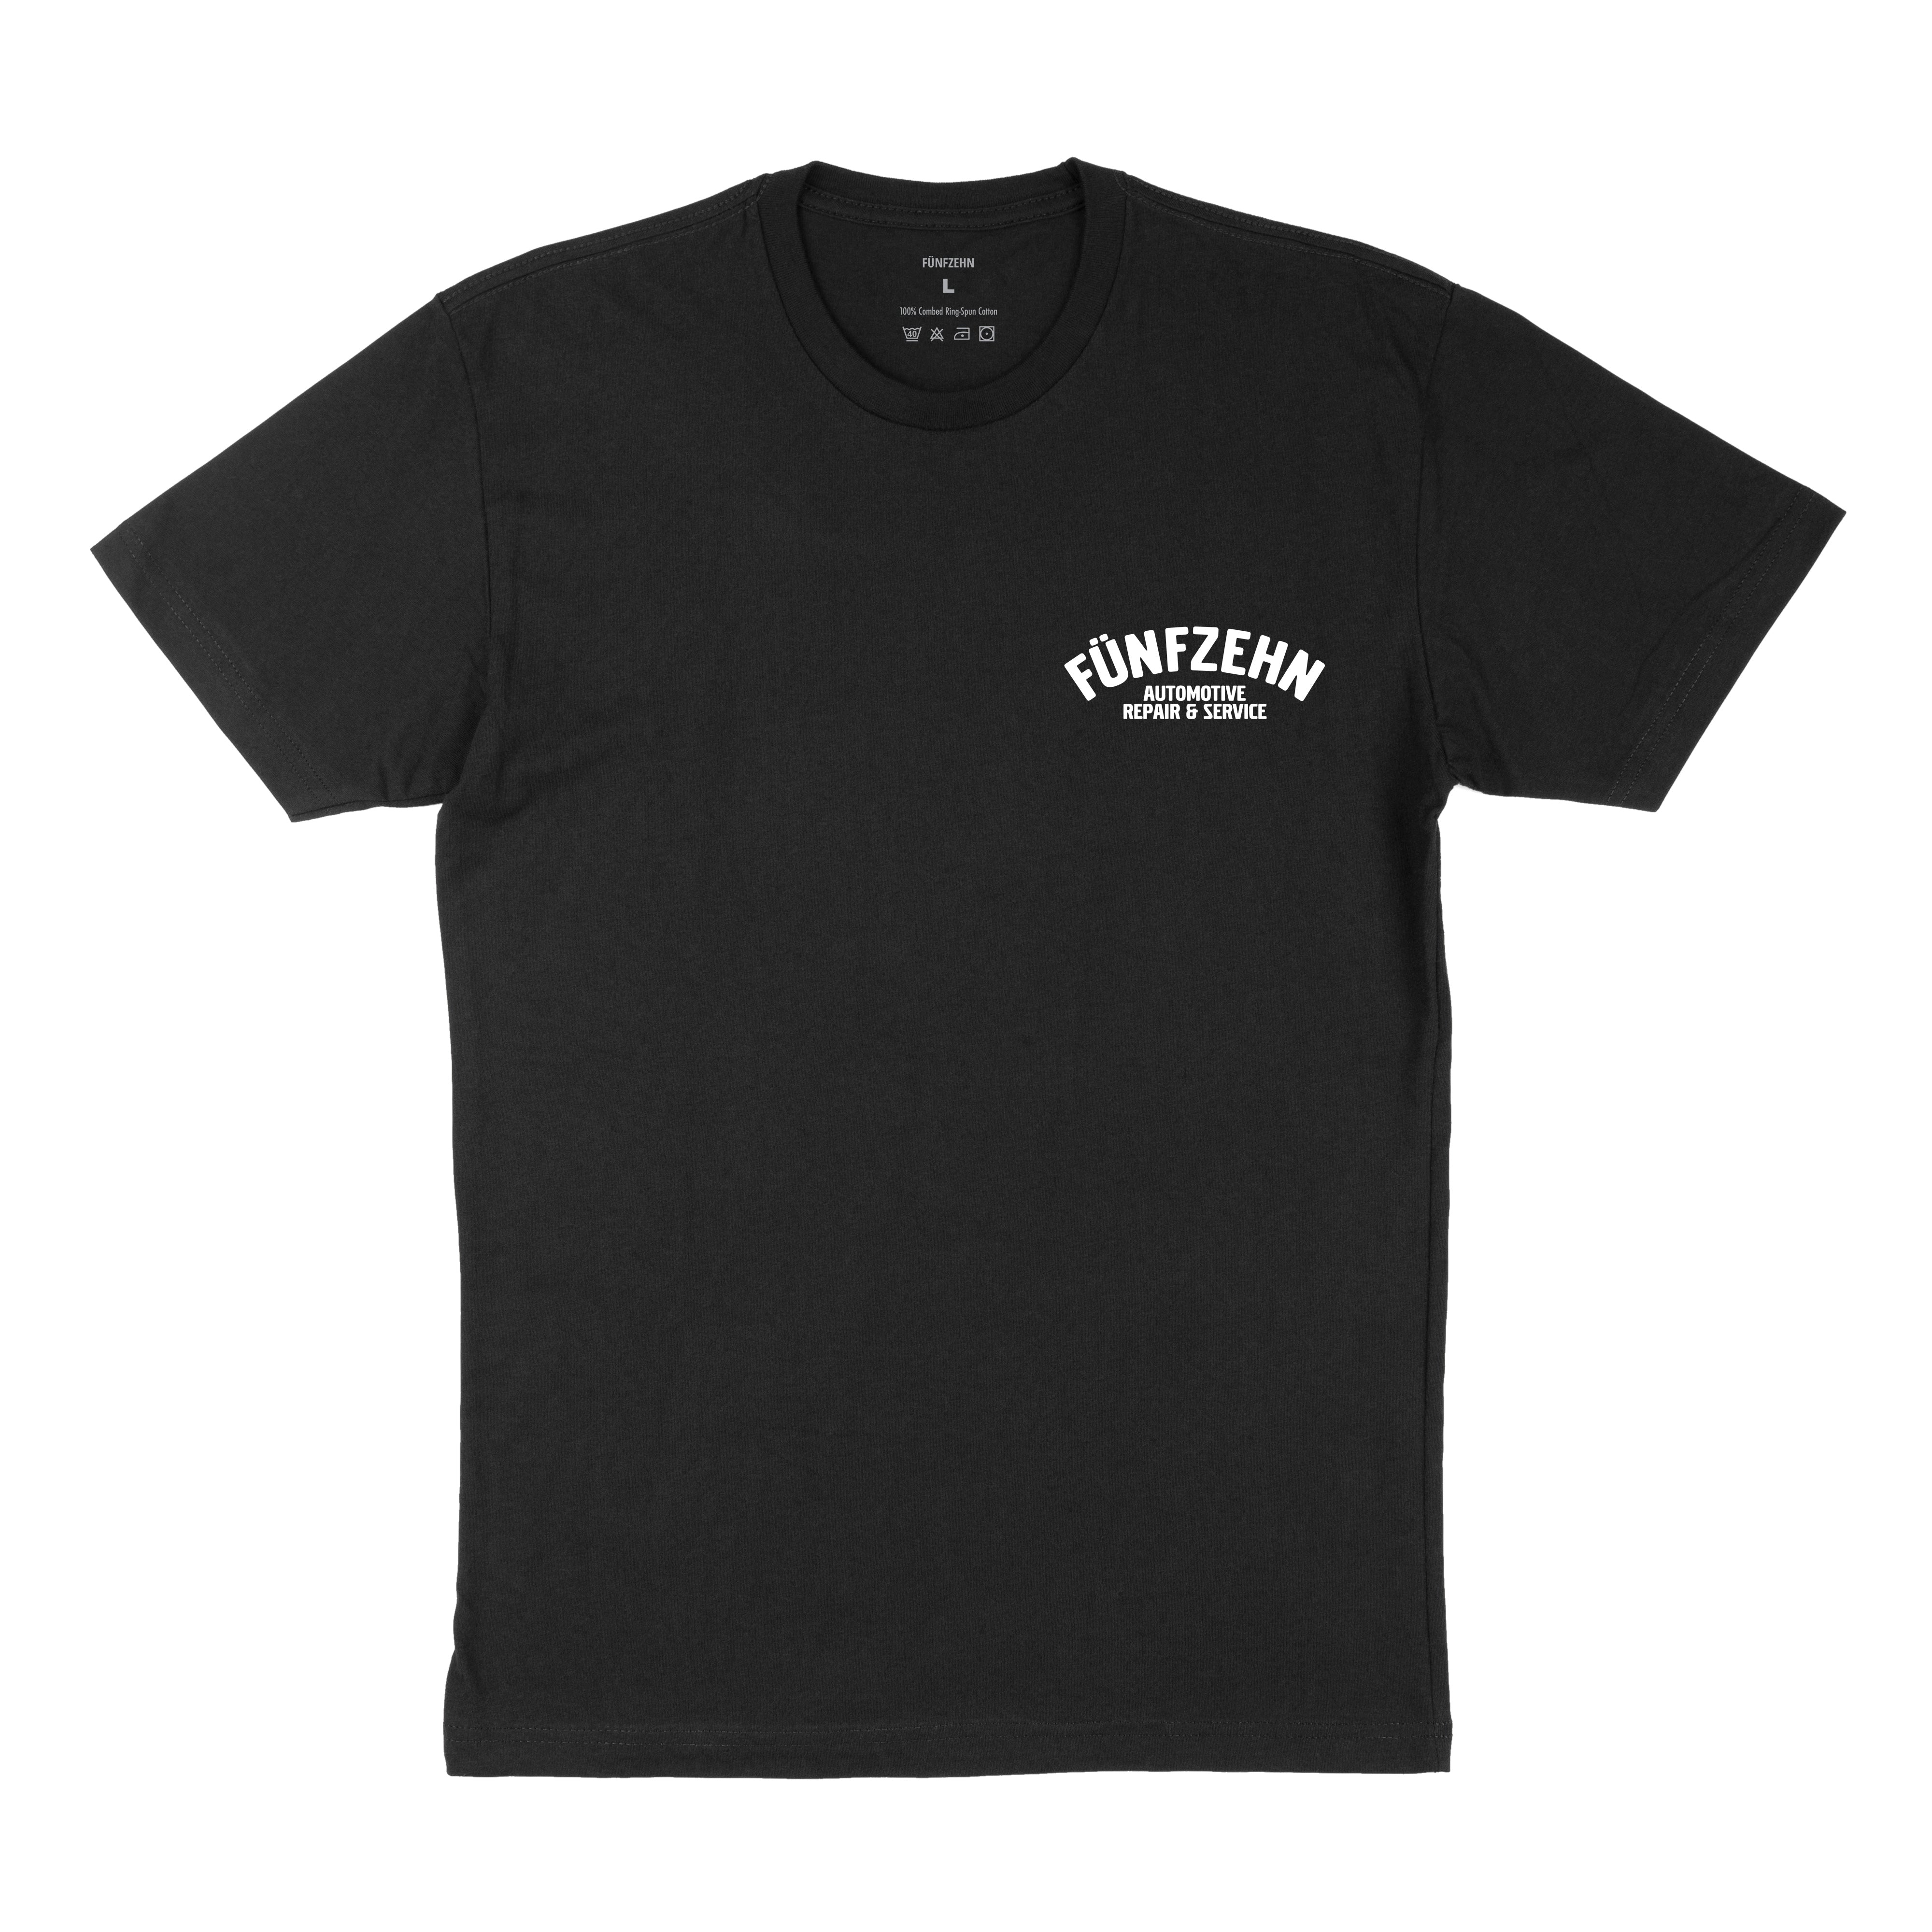 German Auto Shop T-Shirt - Black